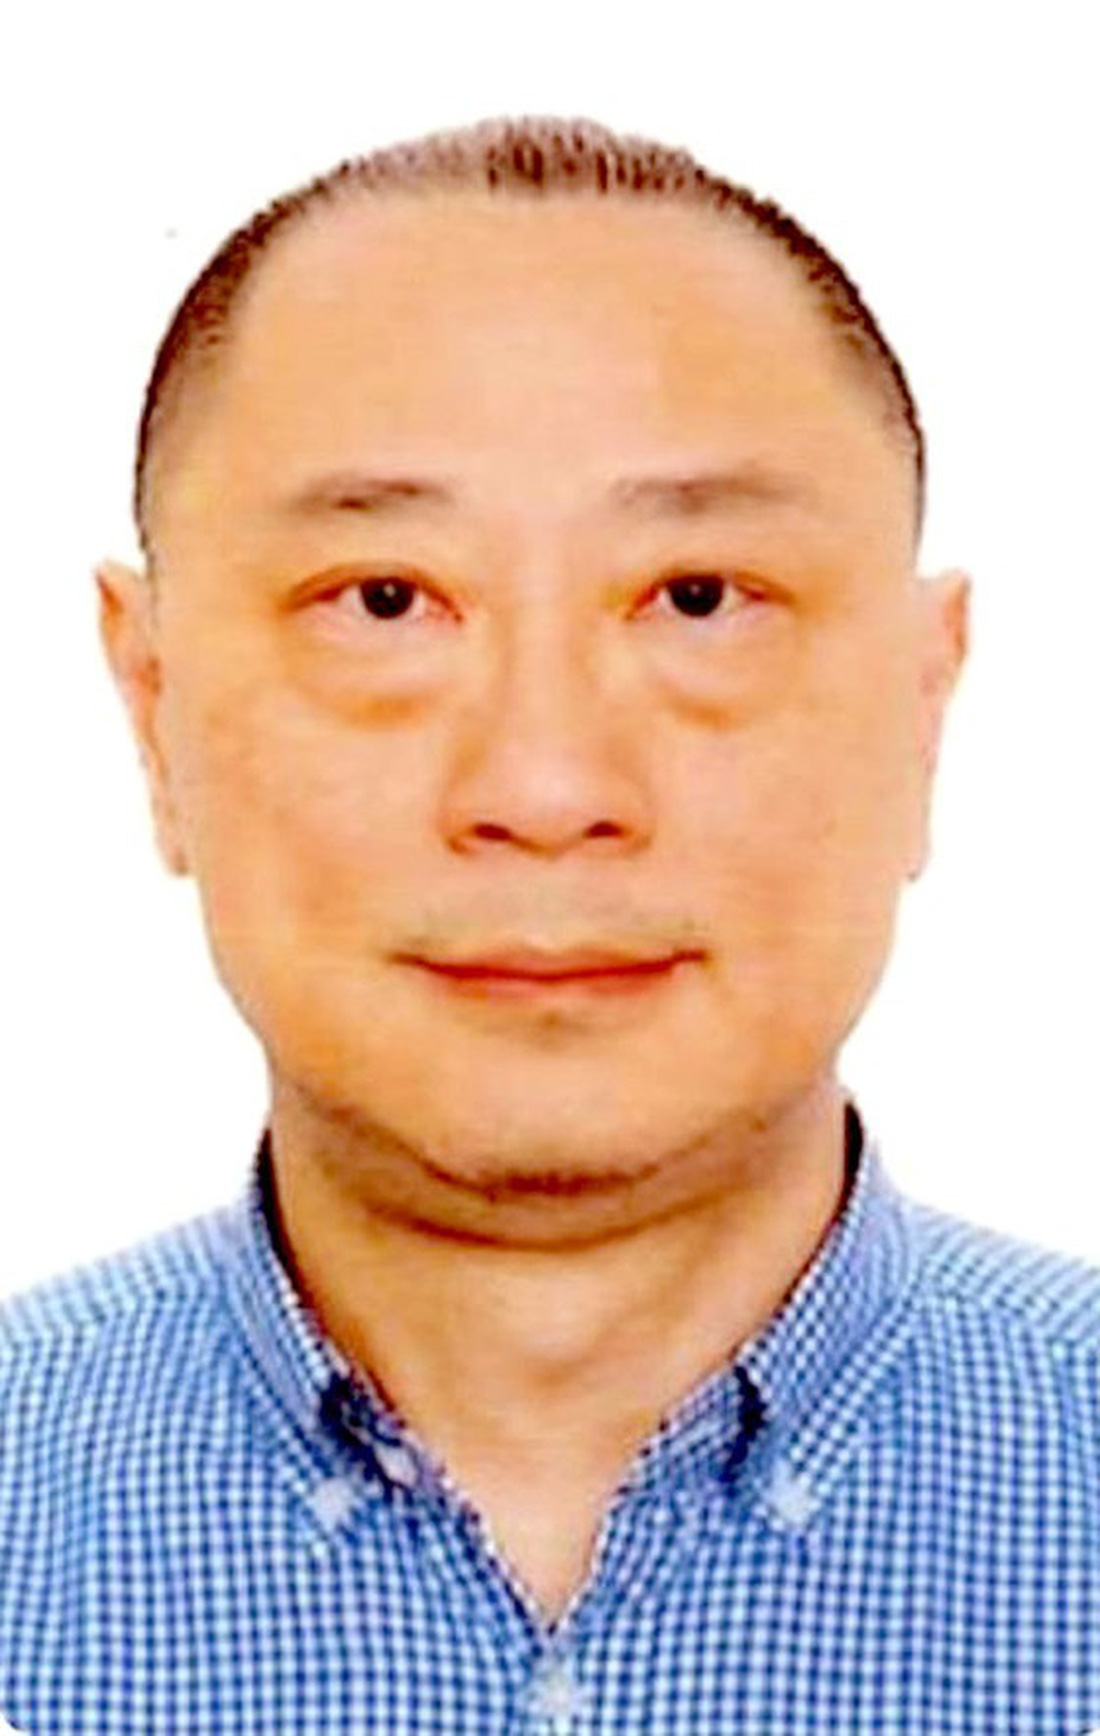 Ông Henry Sun Ka Ziang bị xác định đã xuất cảnh ra nước ngoài bỏ trốn trước khi bị khởi tố - Ảnh: Bộ CA